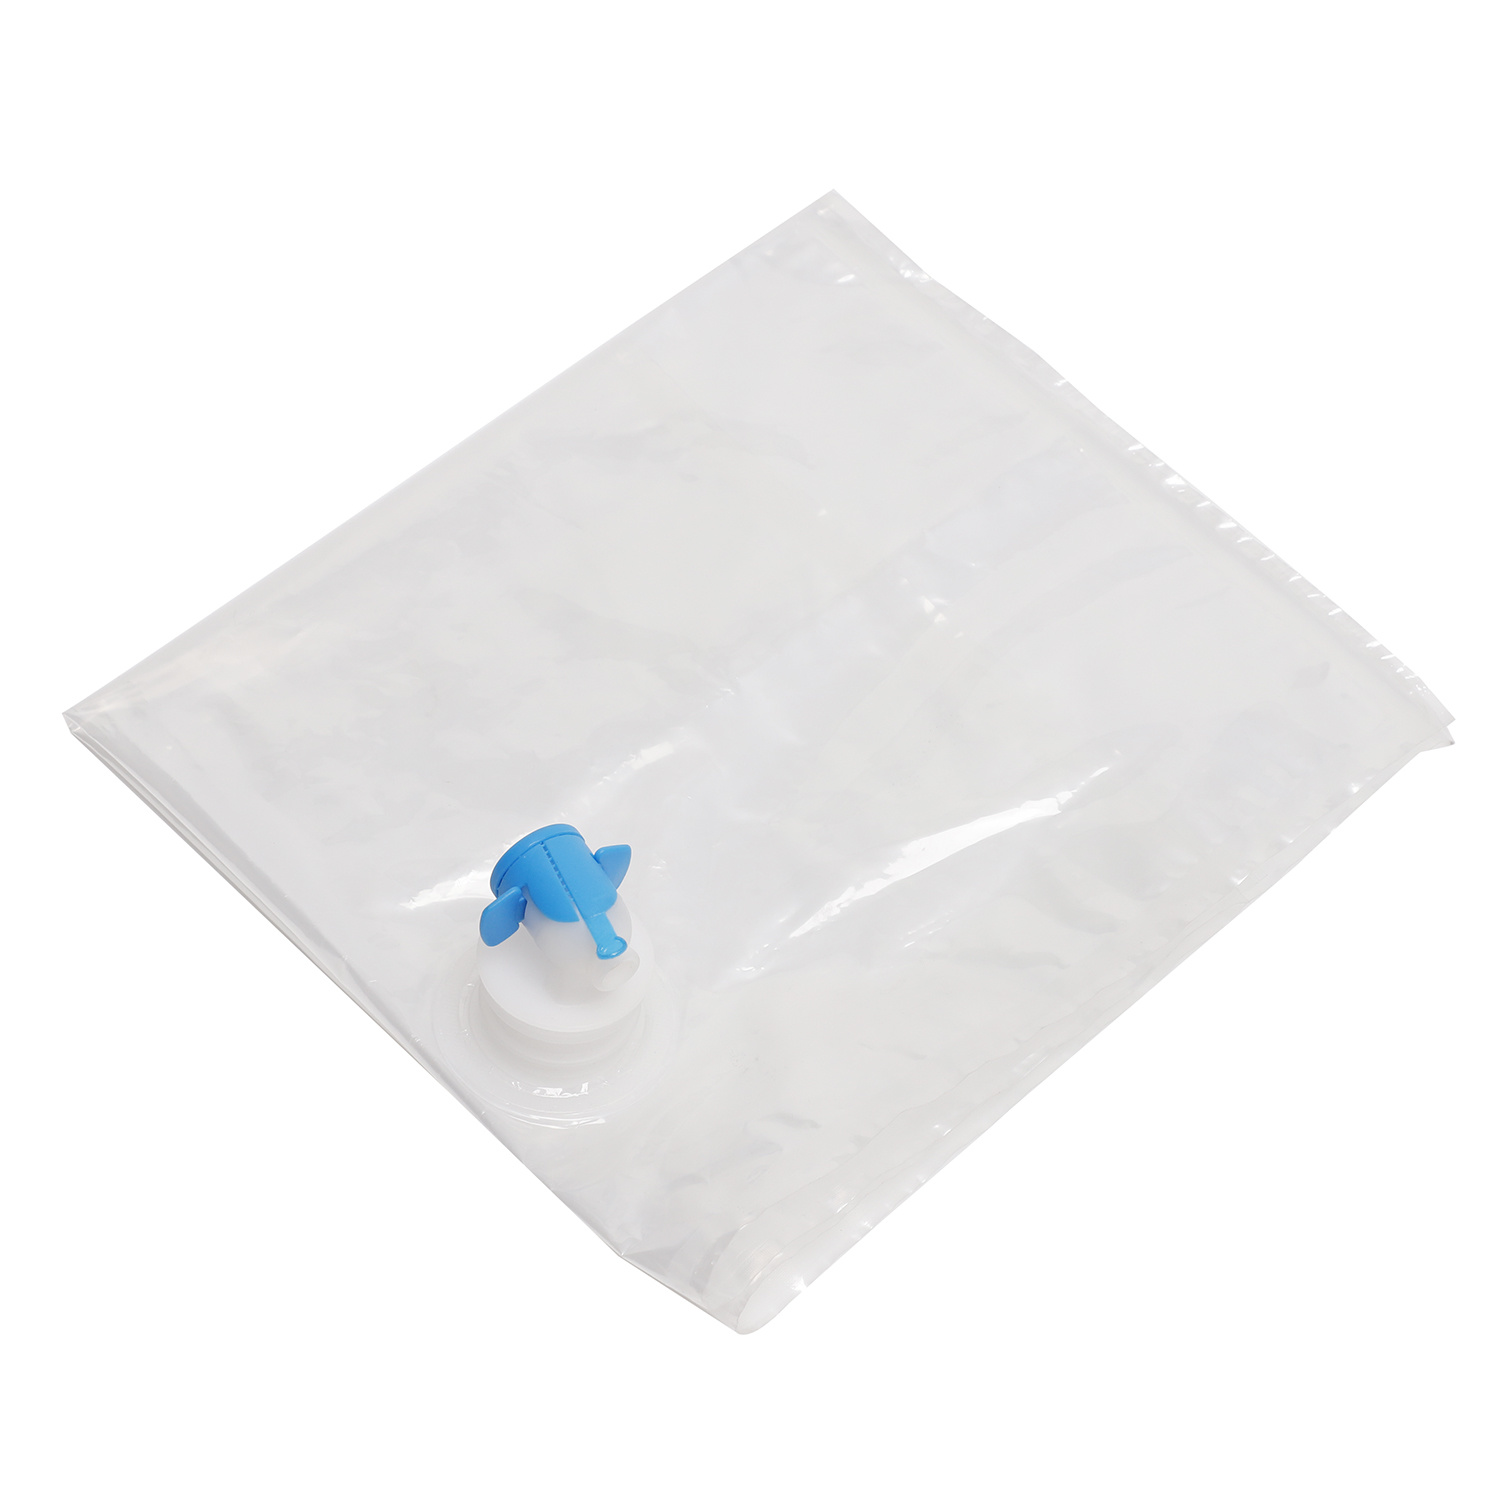 3L BIB Transparent Bag-In-Box Packaging for Water